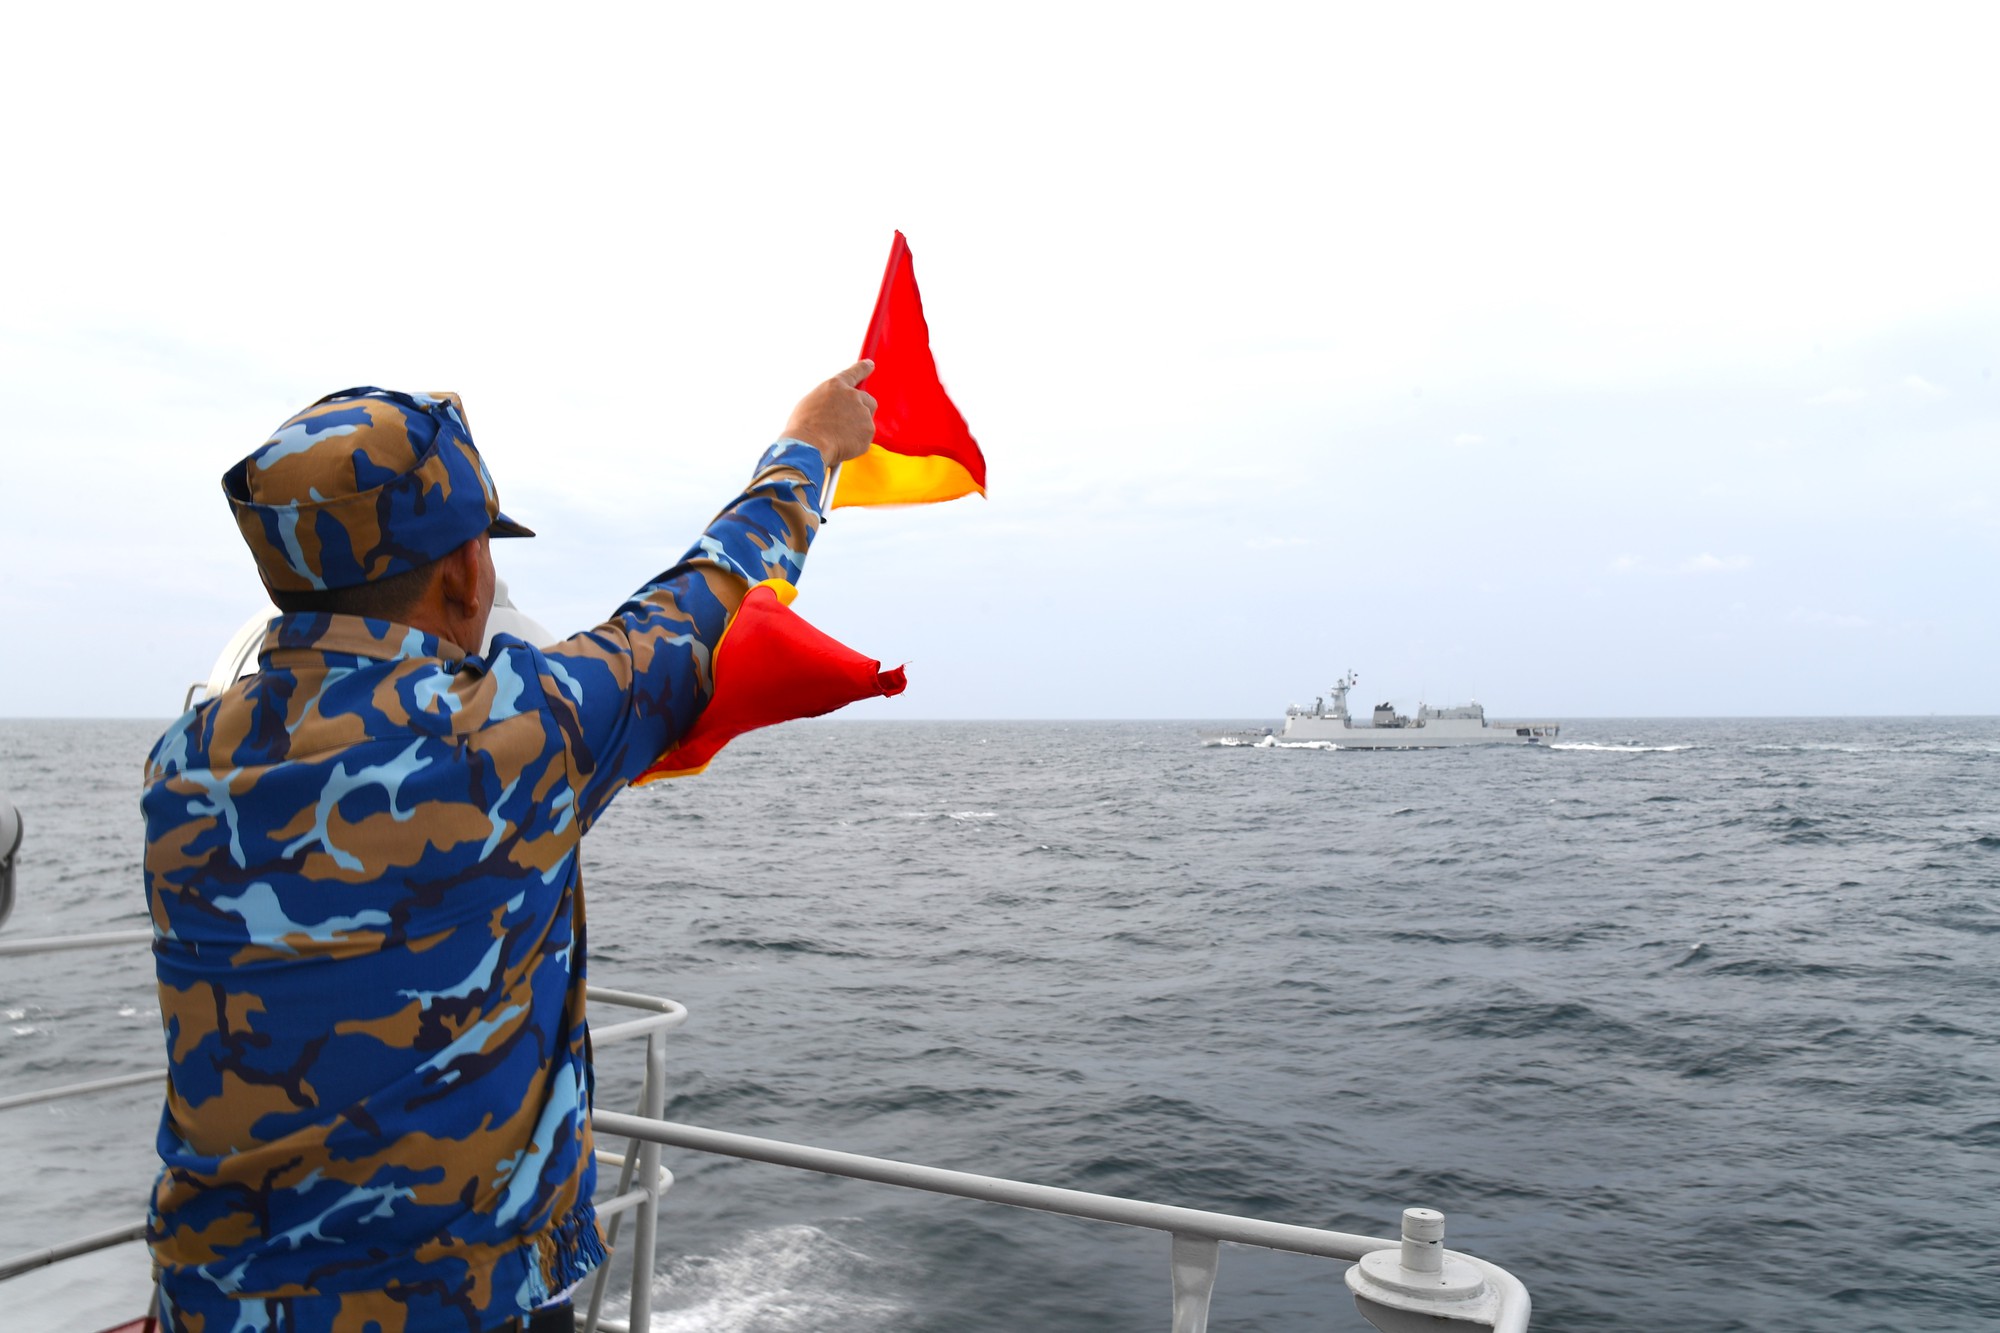 Hải quân Việt Nam và Hải quân Thái Lan phối hợp tuần tra chung trên biển - Ảnh 3.